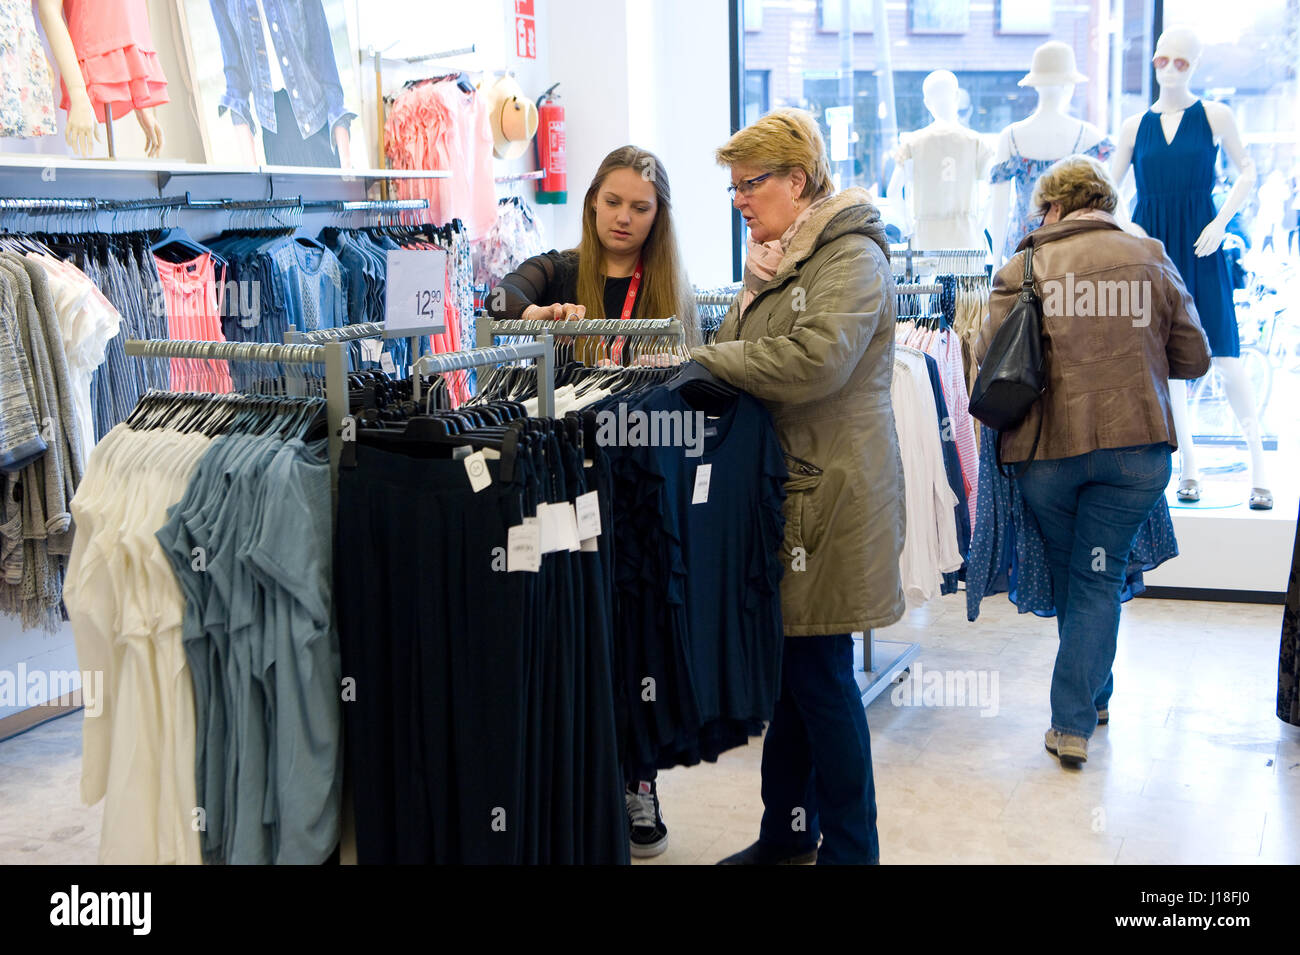 ENSCHEDE, Niederlande - 13. April 2017: Frauen befinden sich Einkaufsmöglichkeiten in Bekleidungsgeschäft C & A nachdem es wieder geöffnet worden. Stockfoto